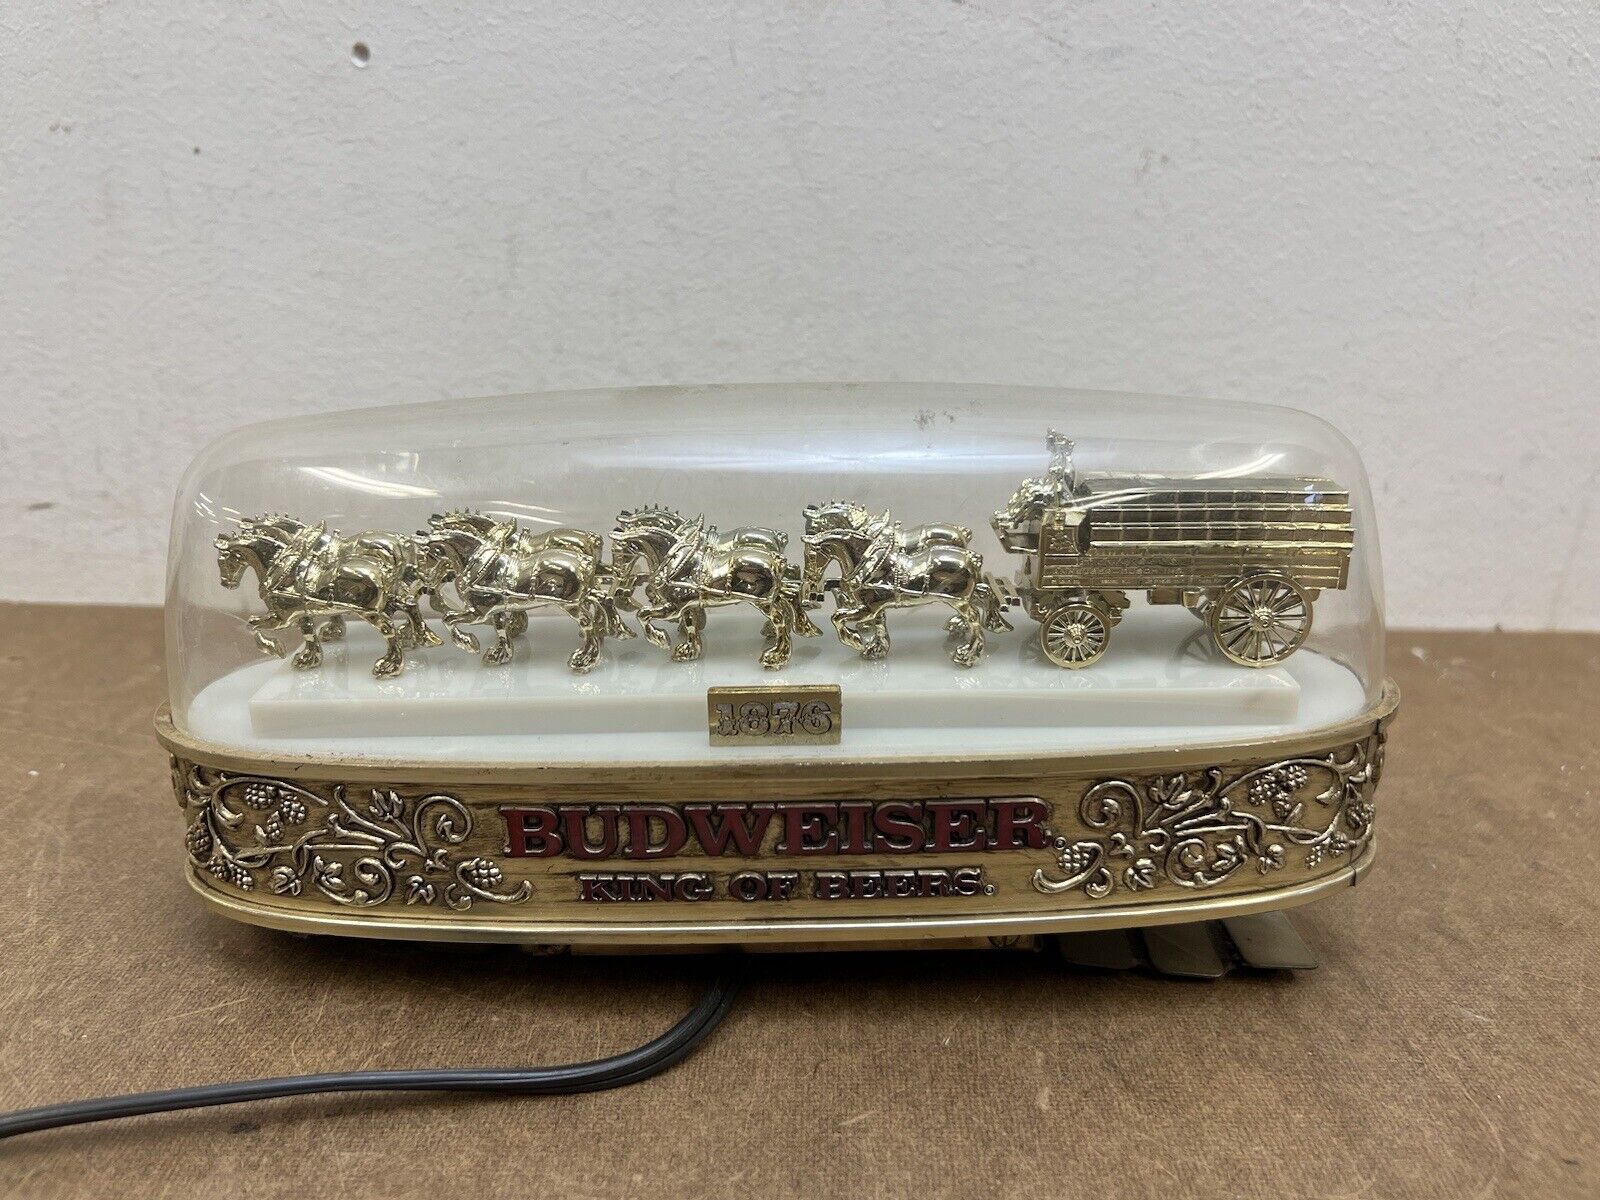 Budweiser Clydesdale Horse Wagon Cash Register Light Vintage Beer Display Topper